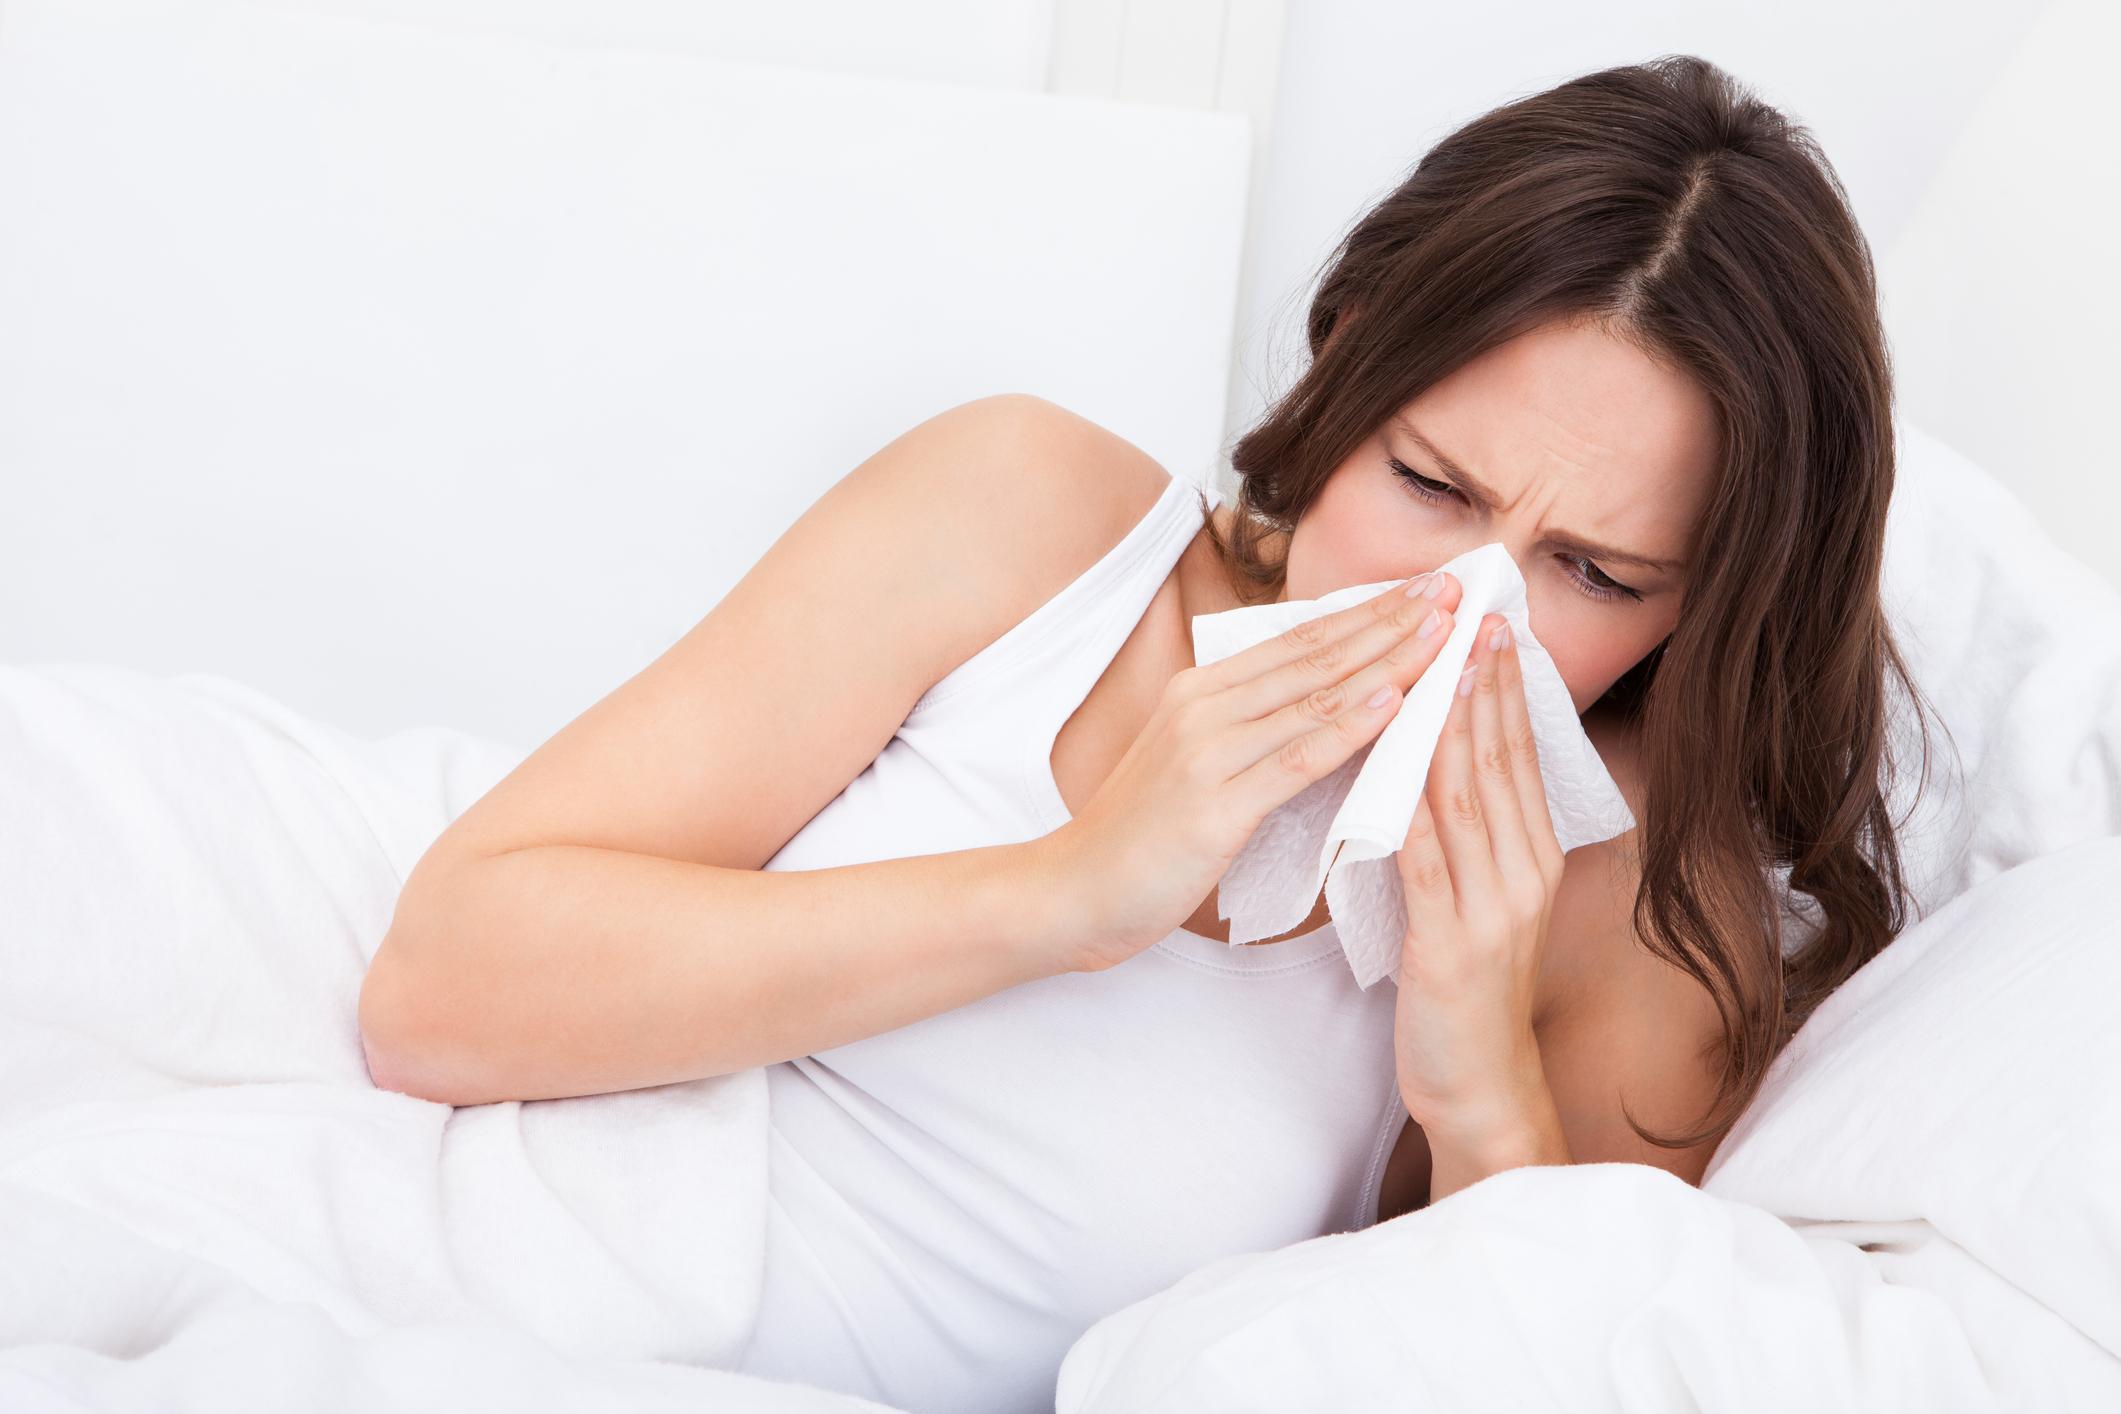 Mudança do estilo de vida e poluição aumentam casos de alergia